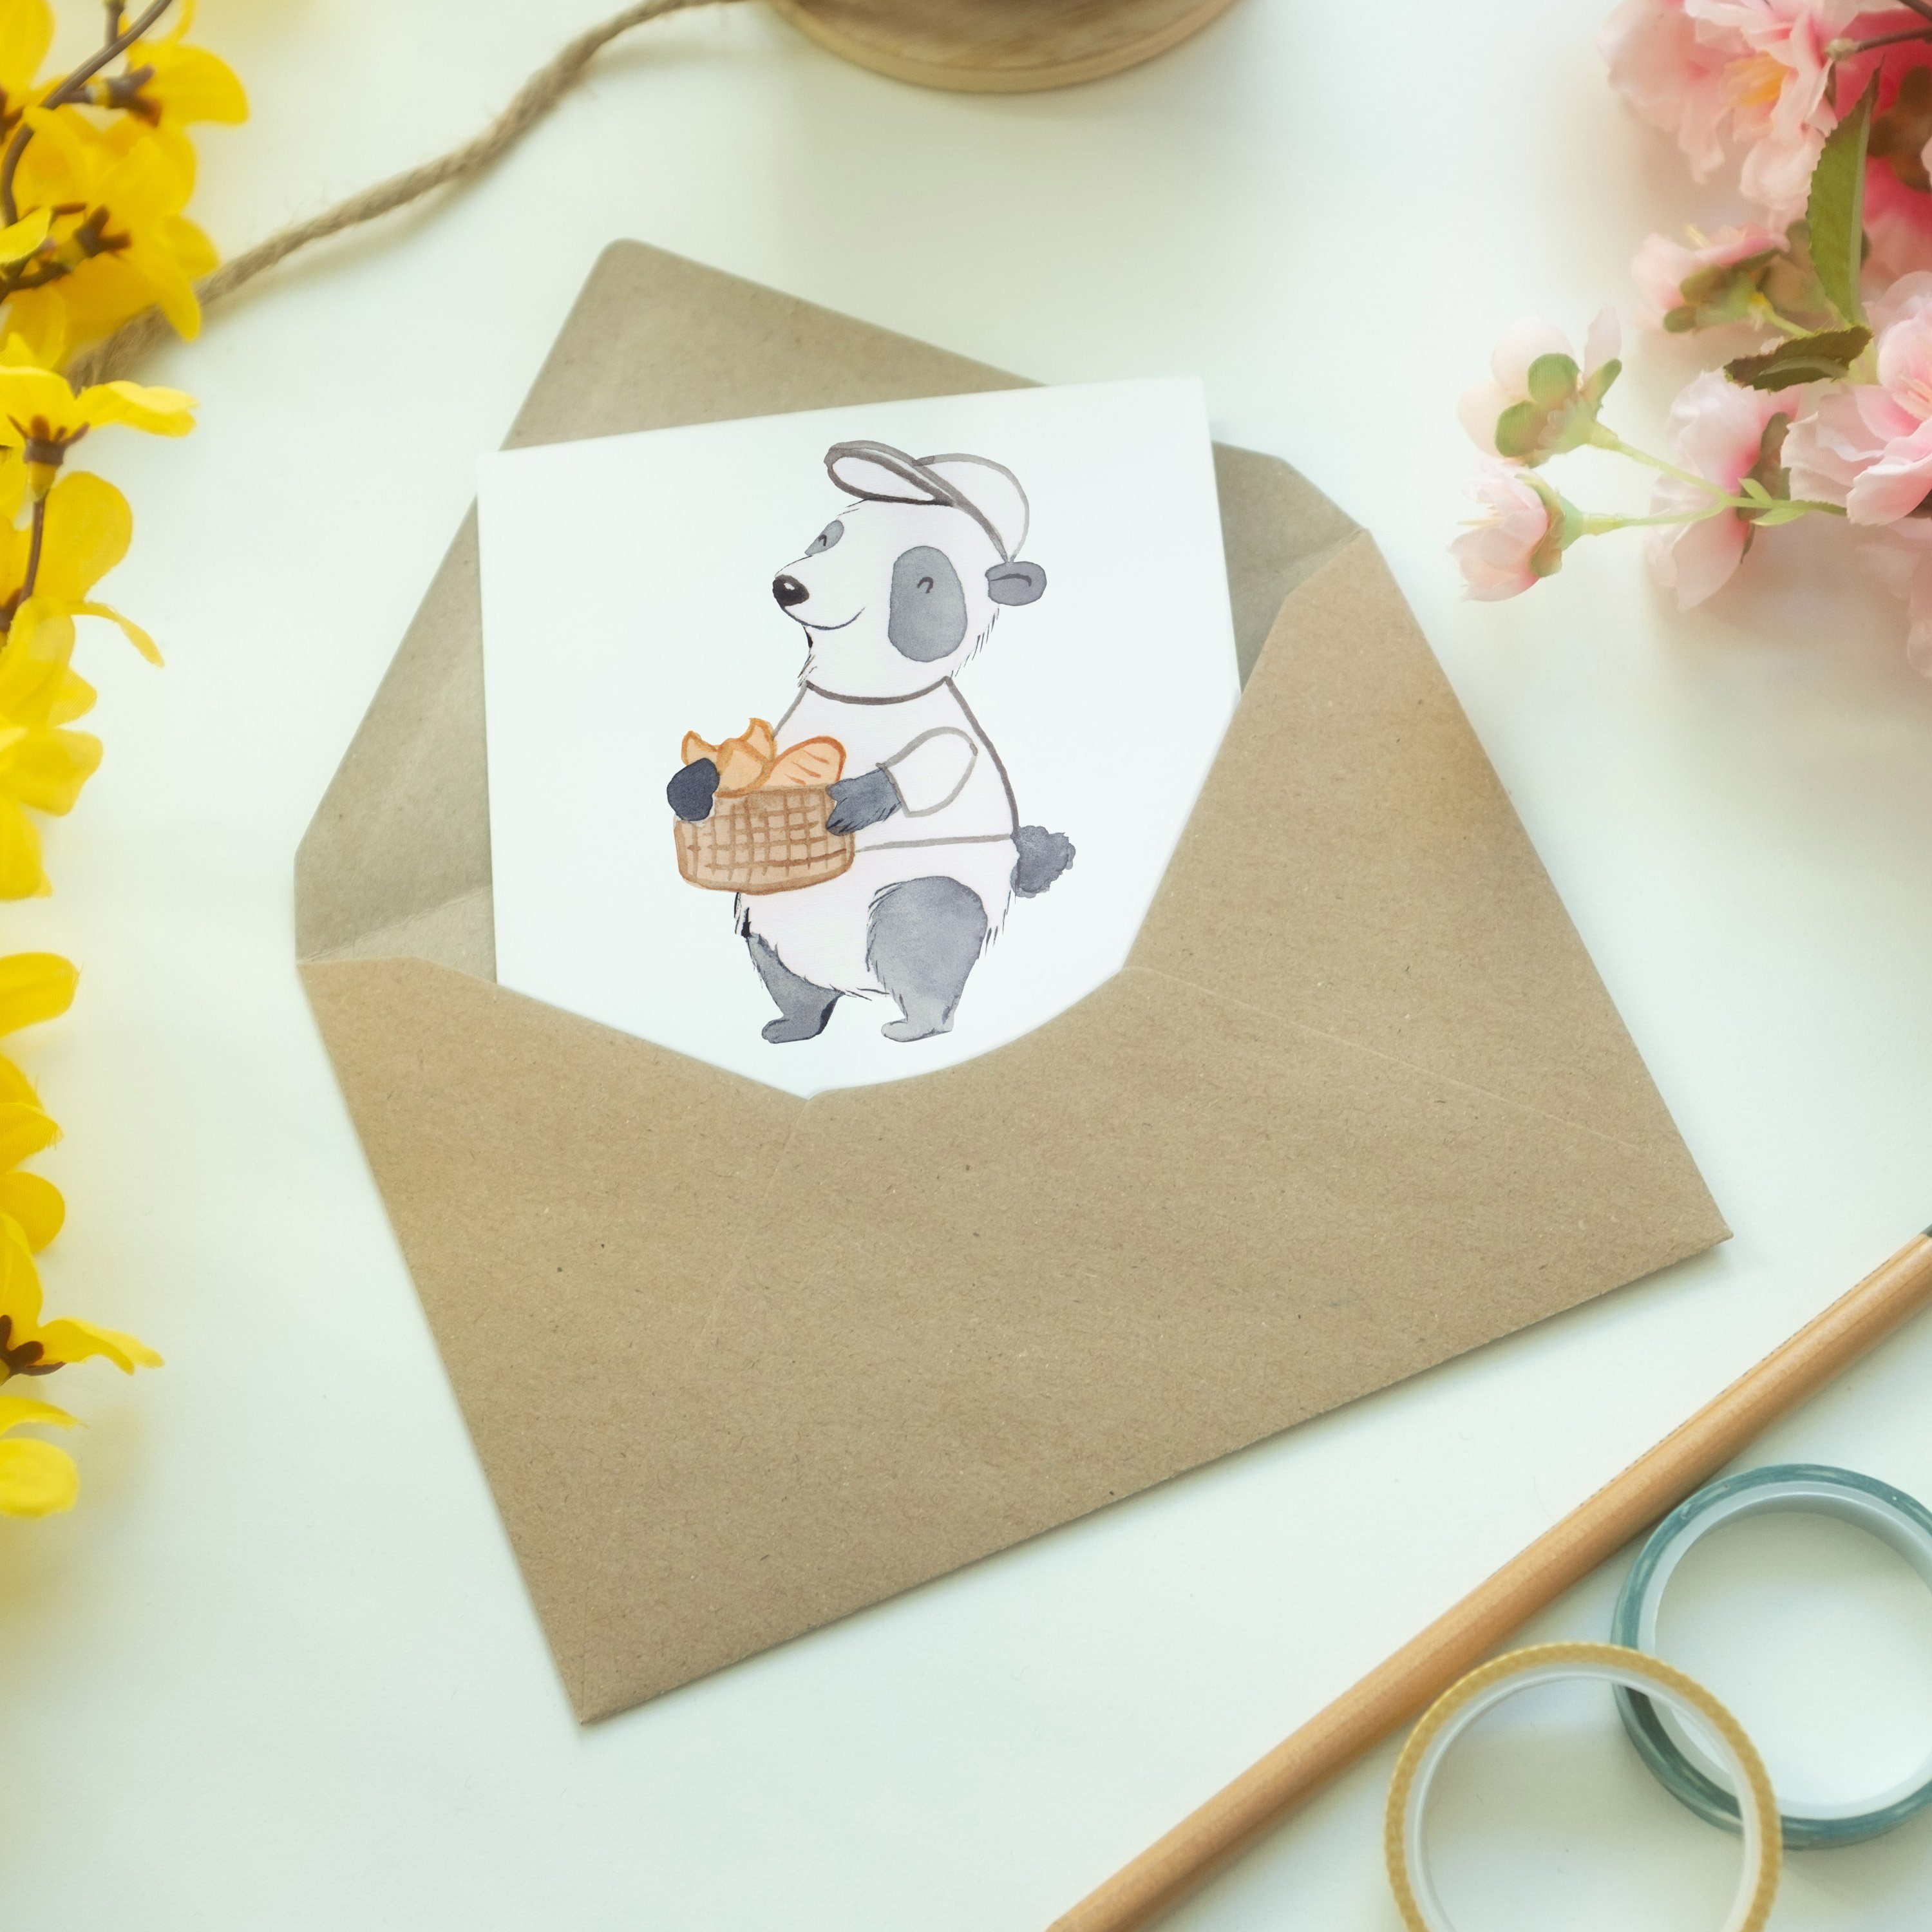 Mr. & Mrs. Panda Grußkarte Bäckereifachverkäufer Herz - Einladu Weiß mit - Klappkarte, Geschenk